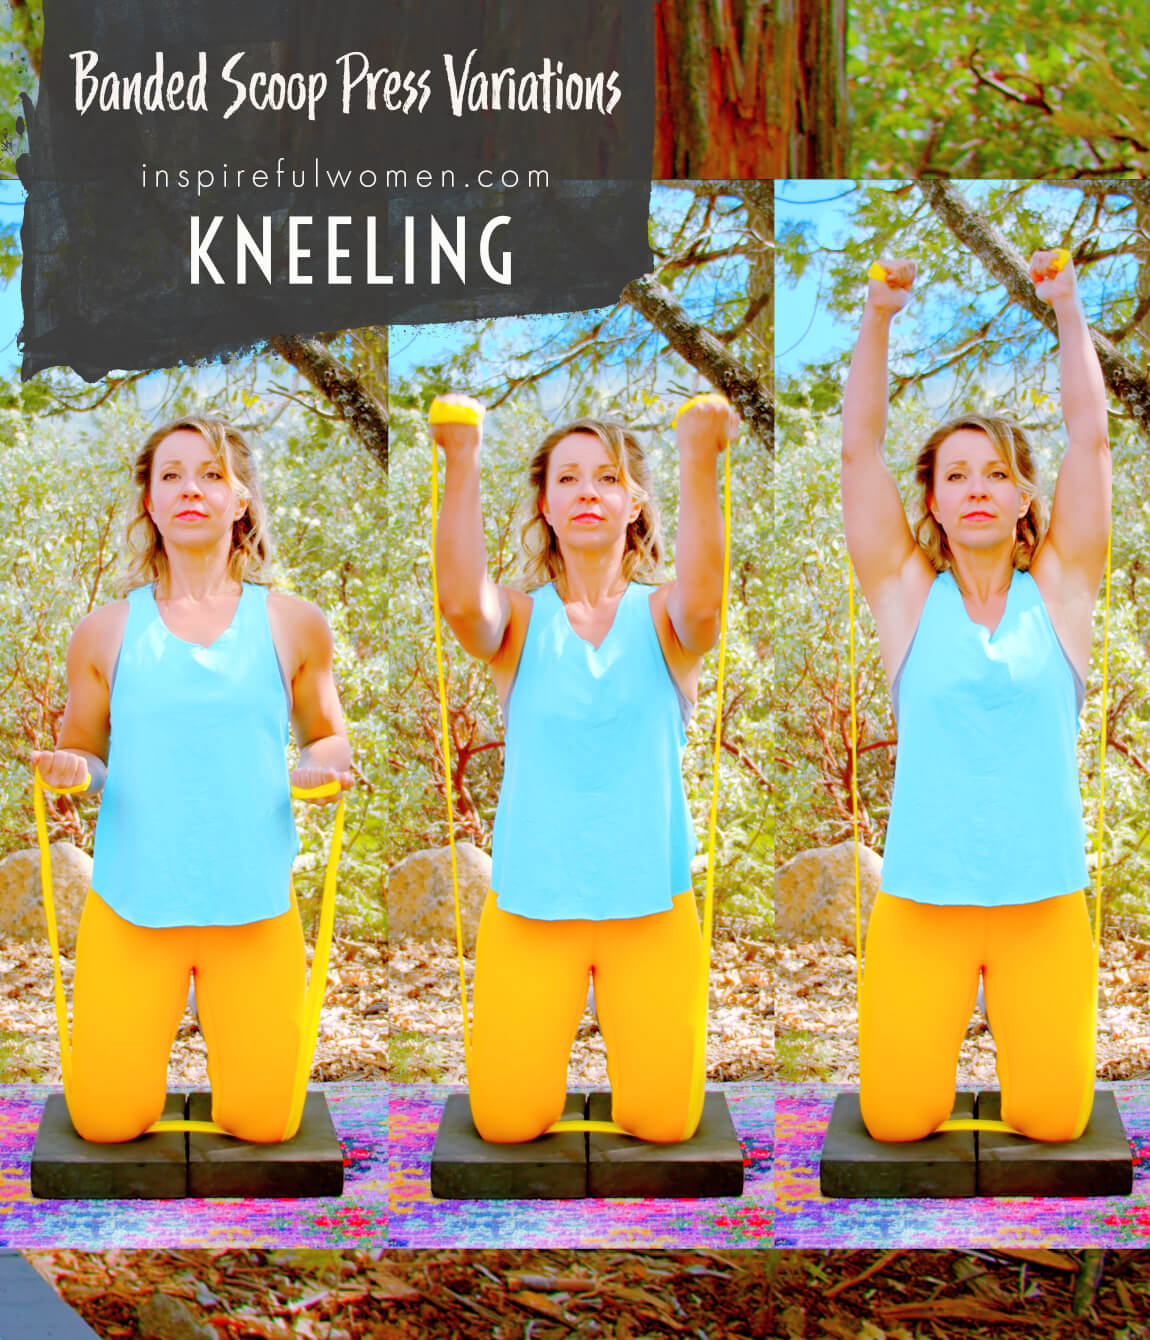 kneeling-banded-scoop-press-shoulder-exercise-variation-front